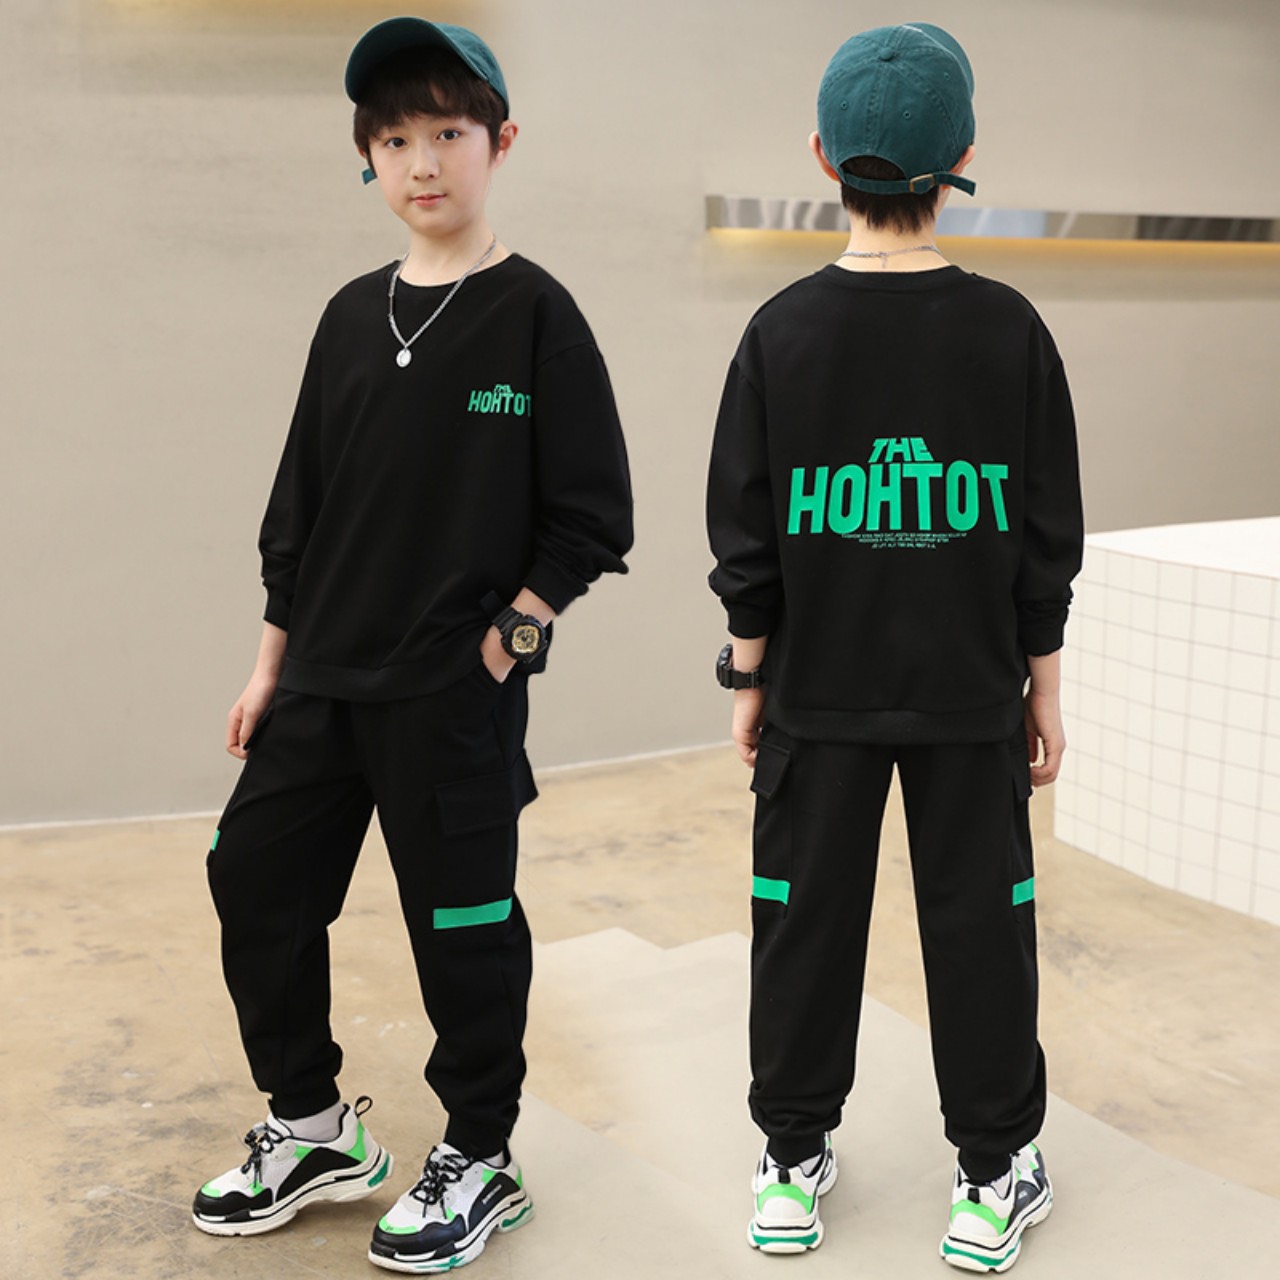 Set bộ quần áo thu đông trẻ em 14-45kg (4-14 tuổi) mẫu HOHTOT. Thiết kế năng động, cá tính.MA83